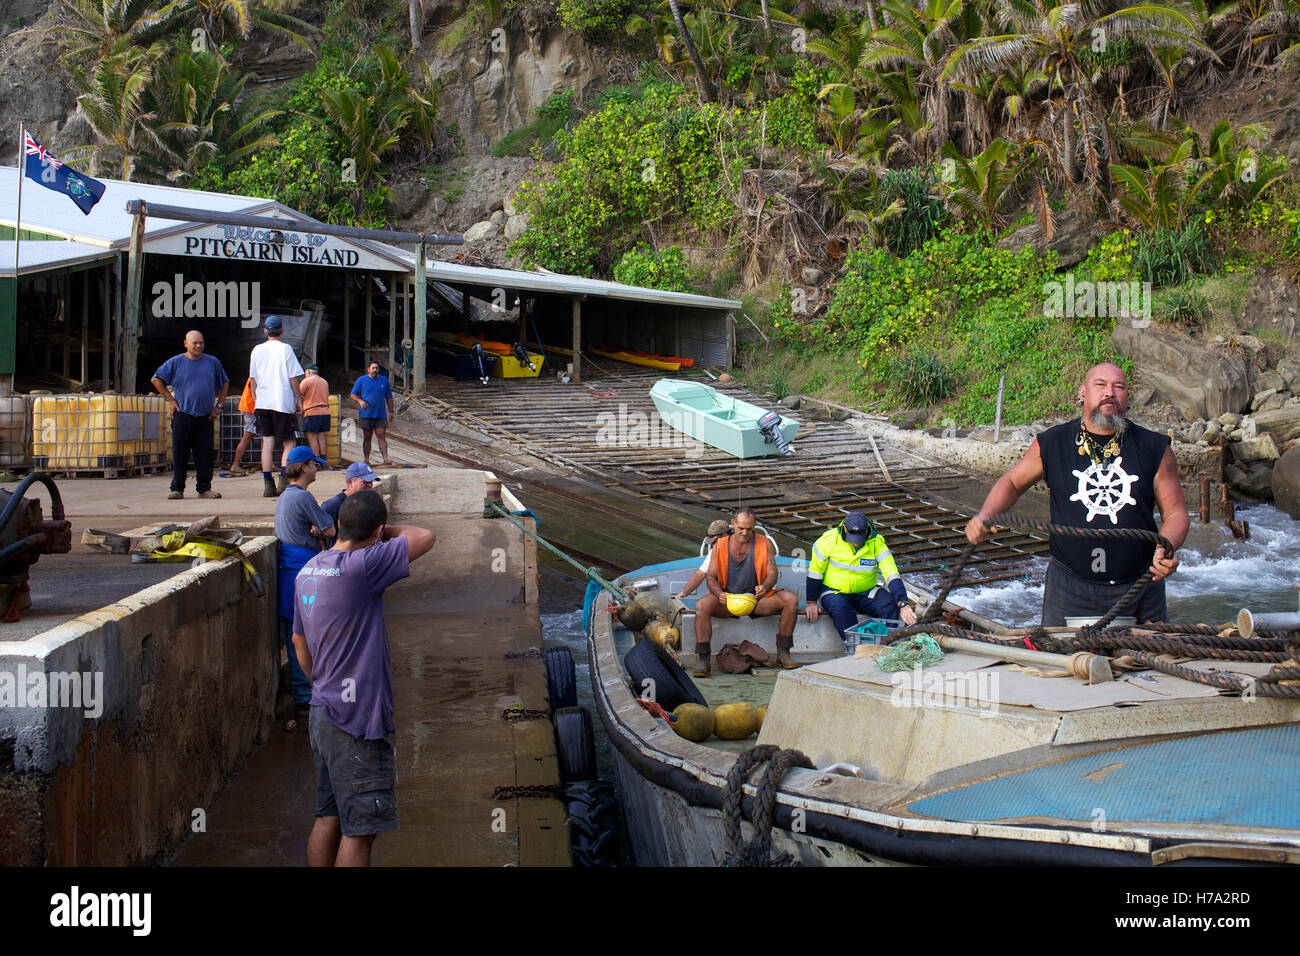 Pitcairn, Söhne von Meuterern! -07/06/2012 - Pitcairn / Pitcairn - Piraten Klinke bei der Landung, kleinen Hafen von Bounty Bay Online in Pitcairn - Olivier Goujon / Le Pictorium Stockfoto